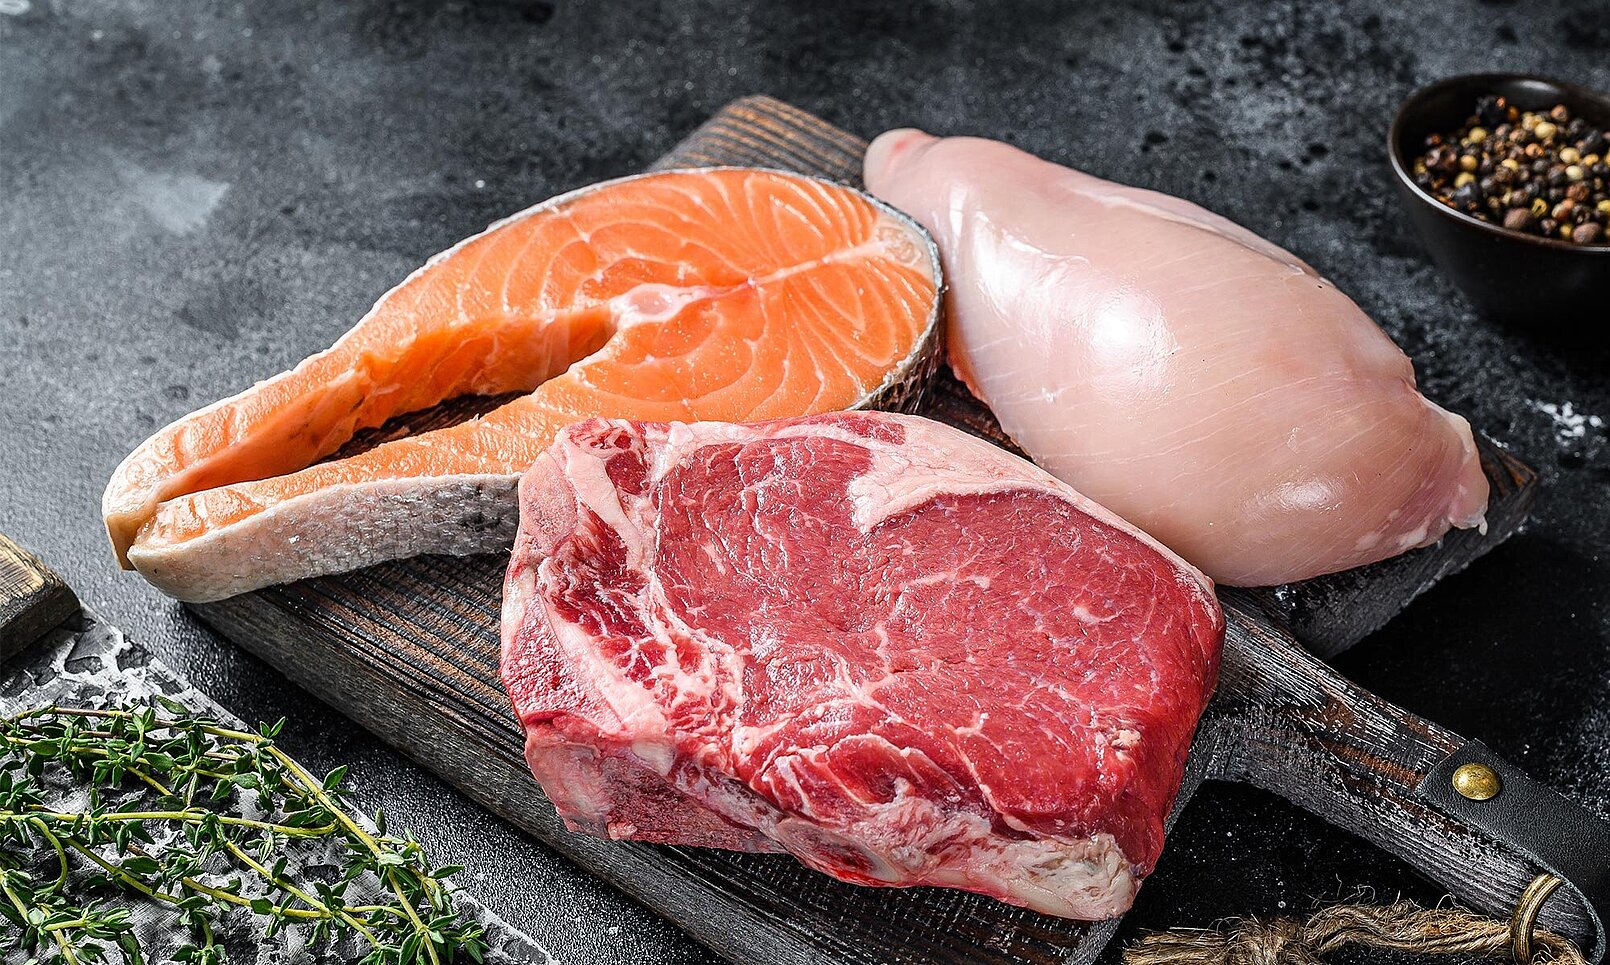 KRONEN Nahrungsmitteltechnik: Spezialmaschinen zur kontinuierlichen Verarbeitung von Fleisch, Wurst und Fisch (u.a. Fleischverarbeitungsmaschinen, Hähnchenverarbeitungsmaschinen)